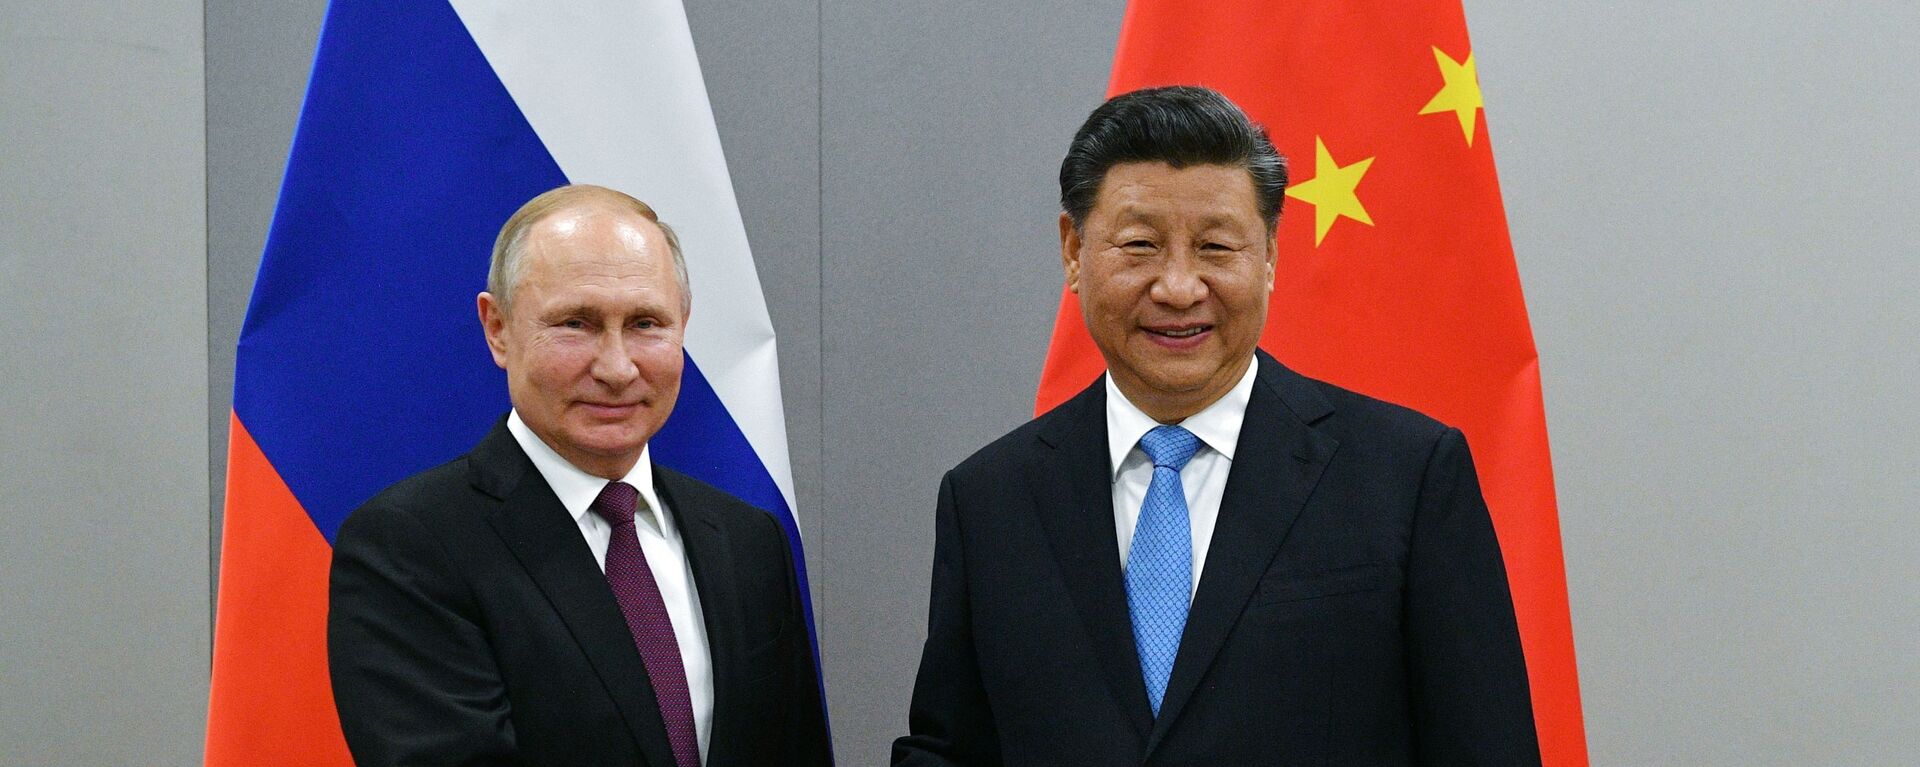 Predsednici Rusije i Kine, Vladimir Putin i Si Đingping - Sputnik Srbija, 1920, 14.12.2021